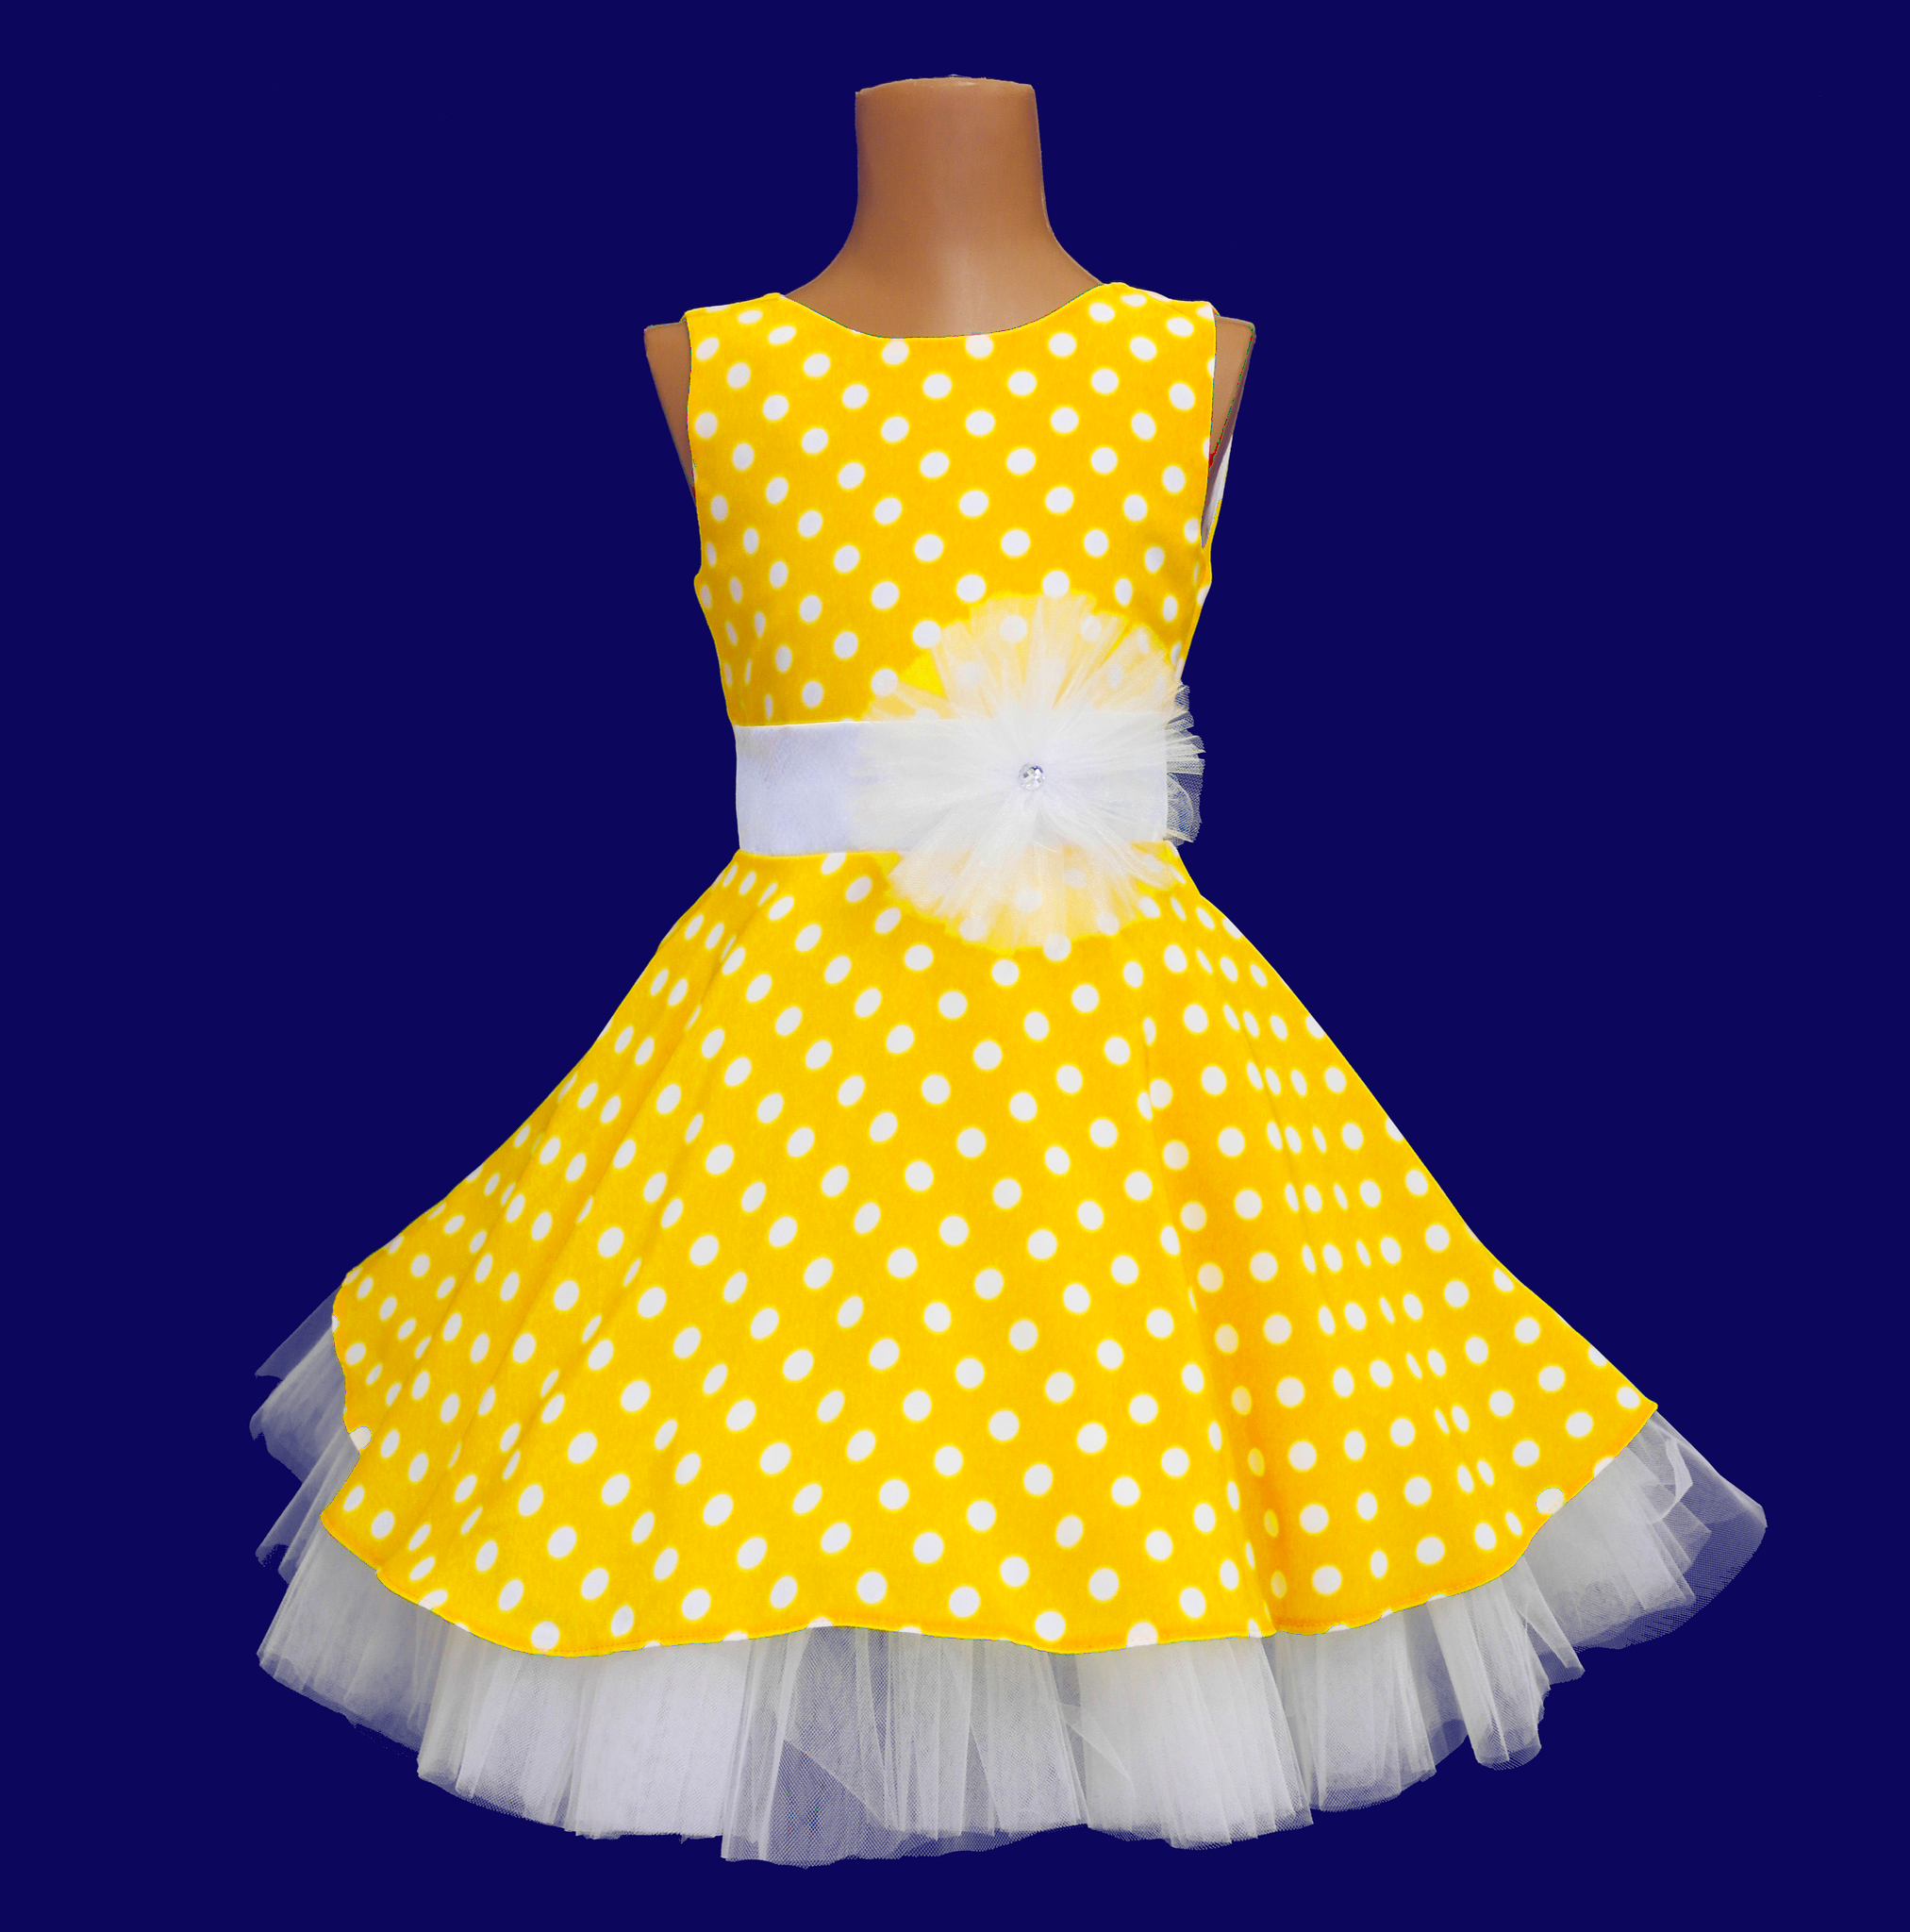 Валберис платье Стиляги. Желтое платье для девочки. Детские платья в стиле ретро. Стиляги платье для девочки на выпускной. Платье на выпускной в стиле стиляги